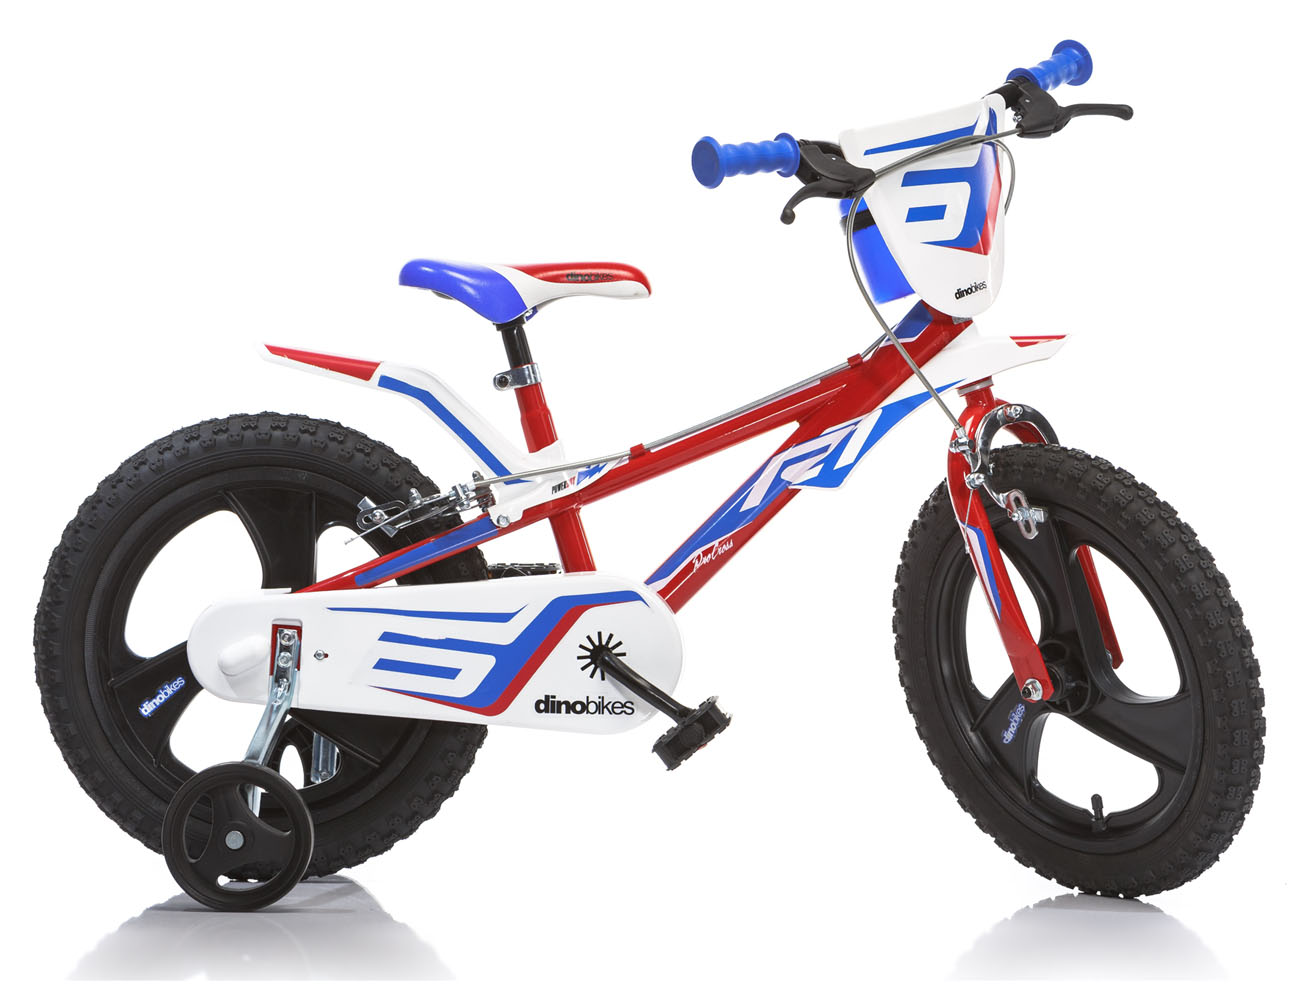 Dino bikes 816 - R1 16"